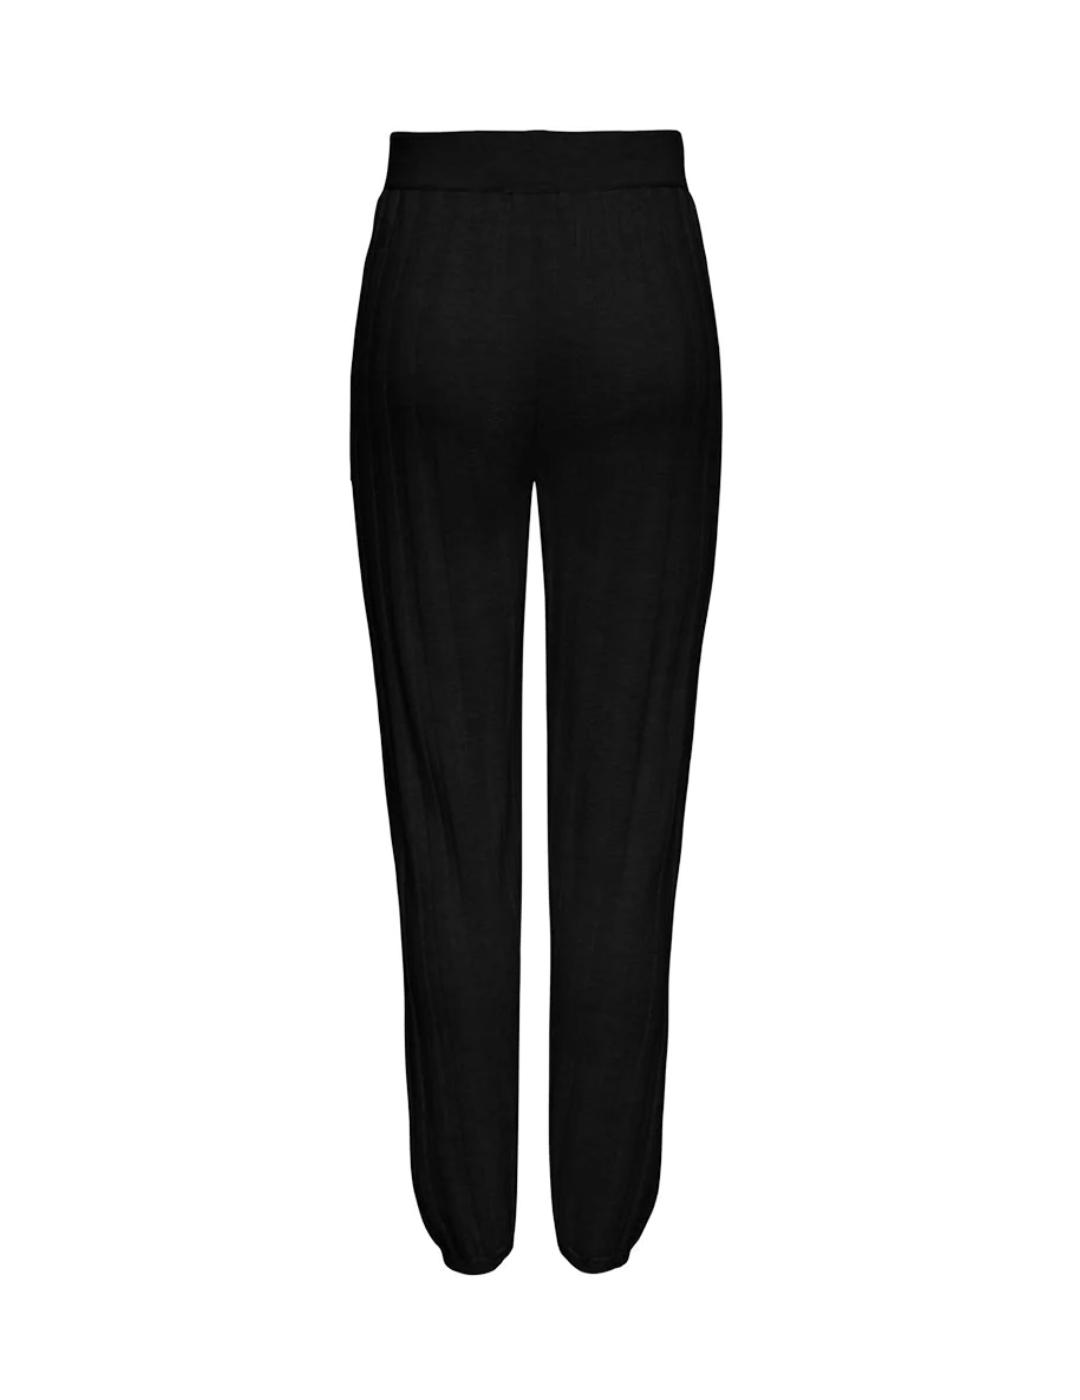 Pantalon Only new Tessa algodon negro para mujer-z